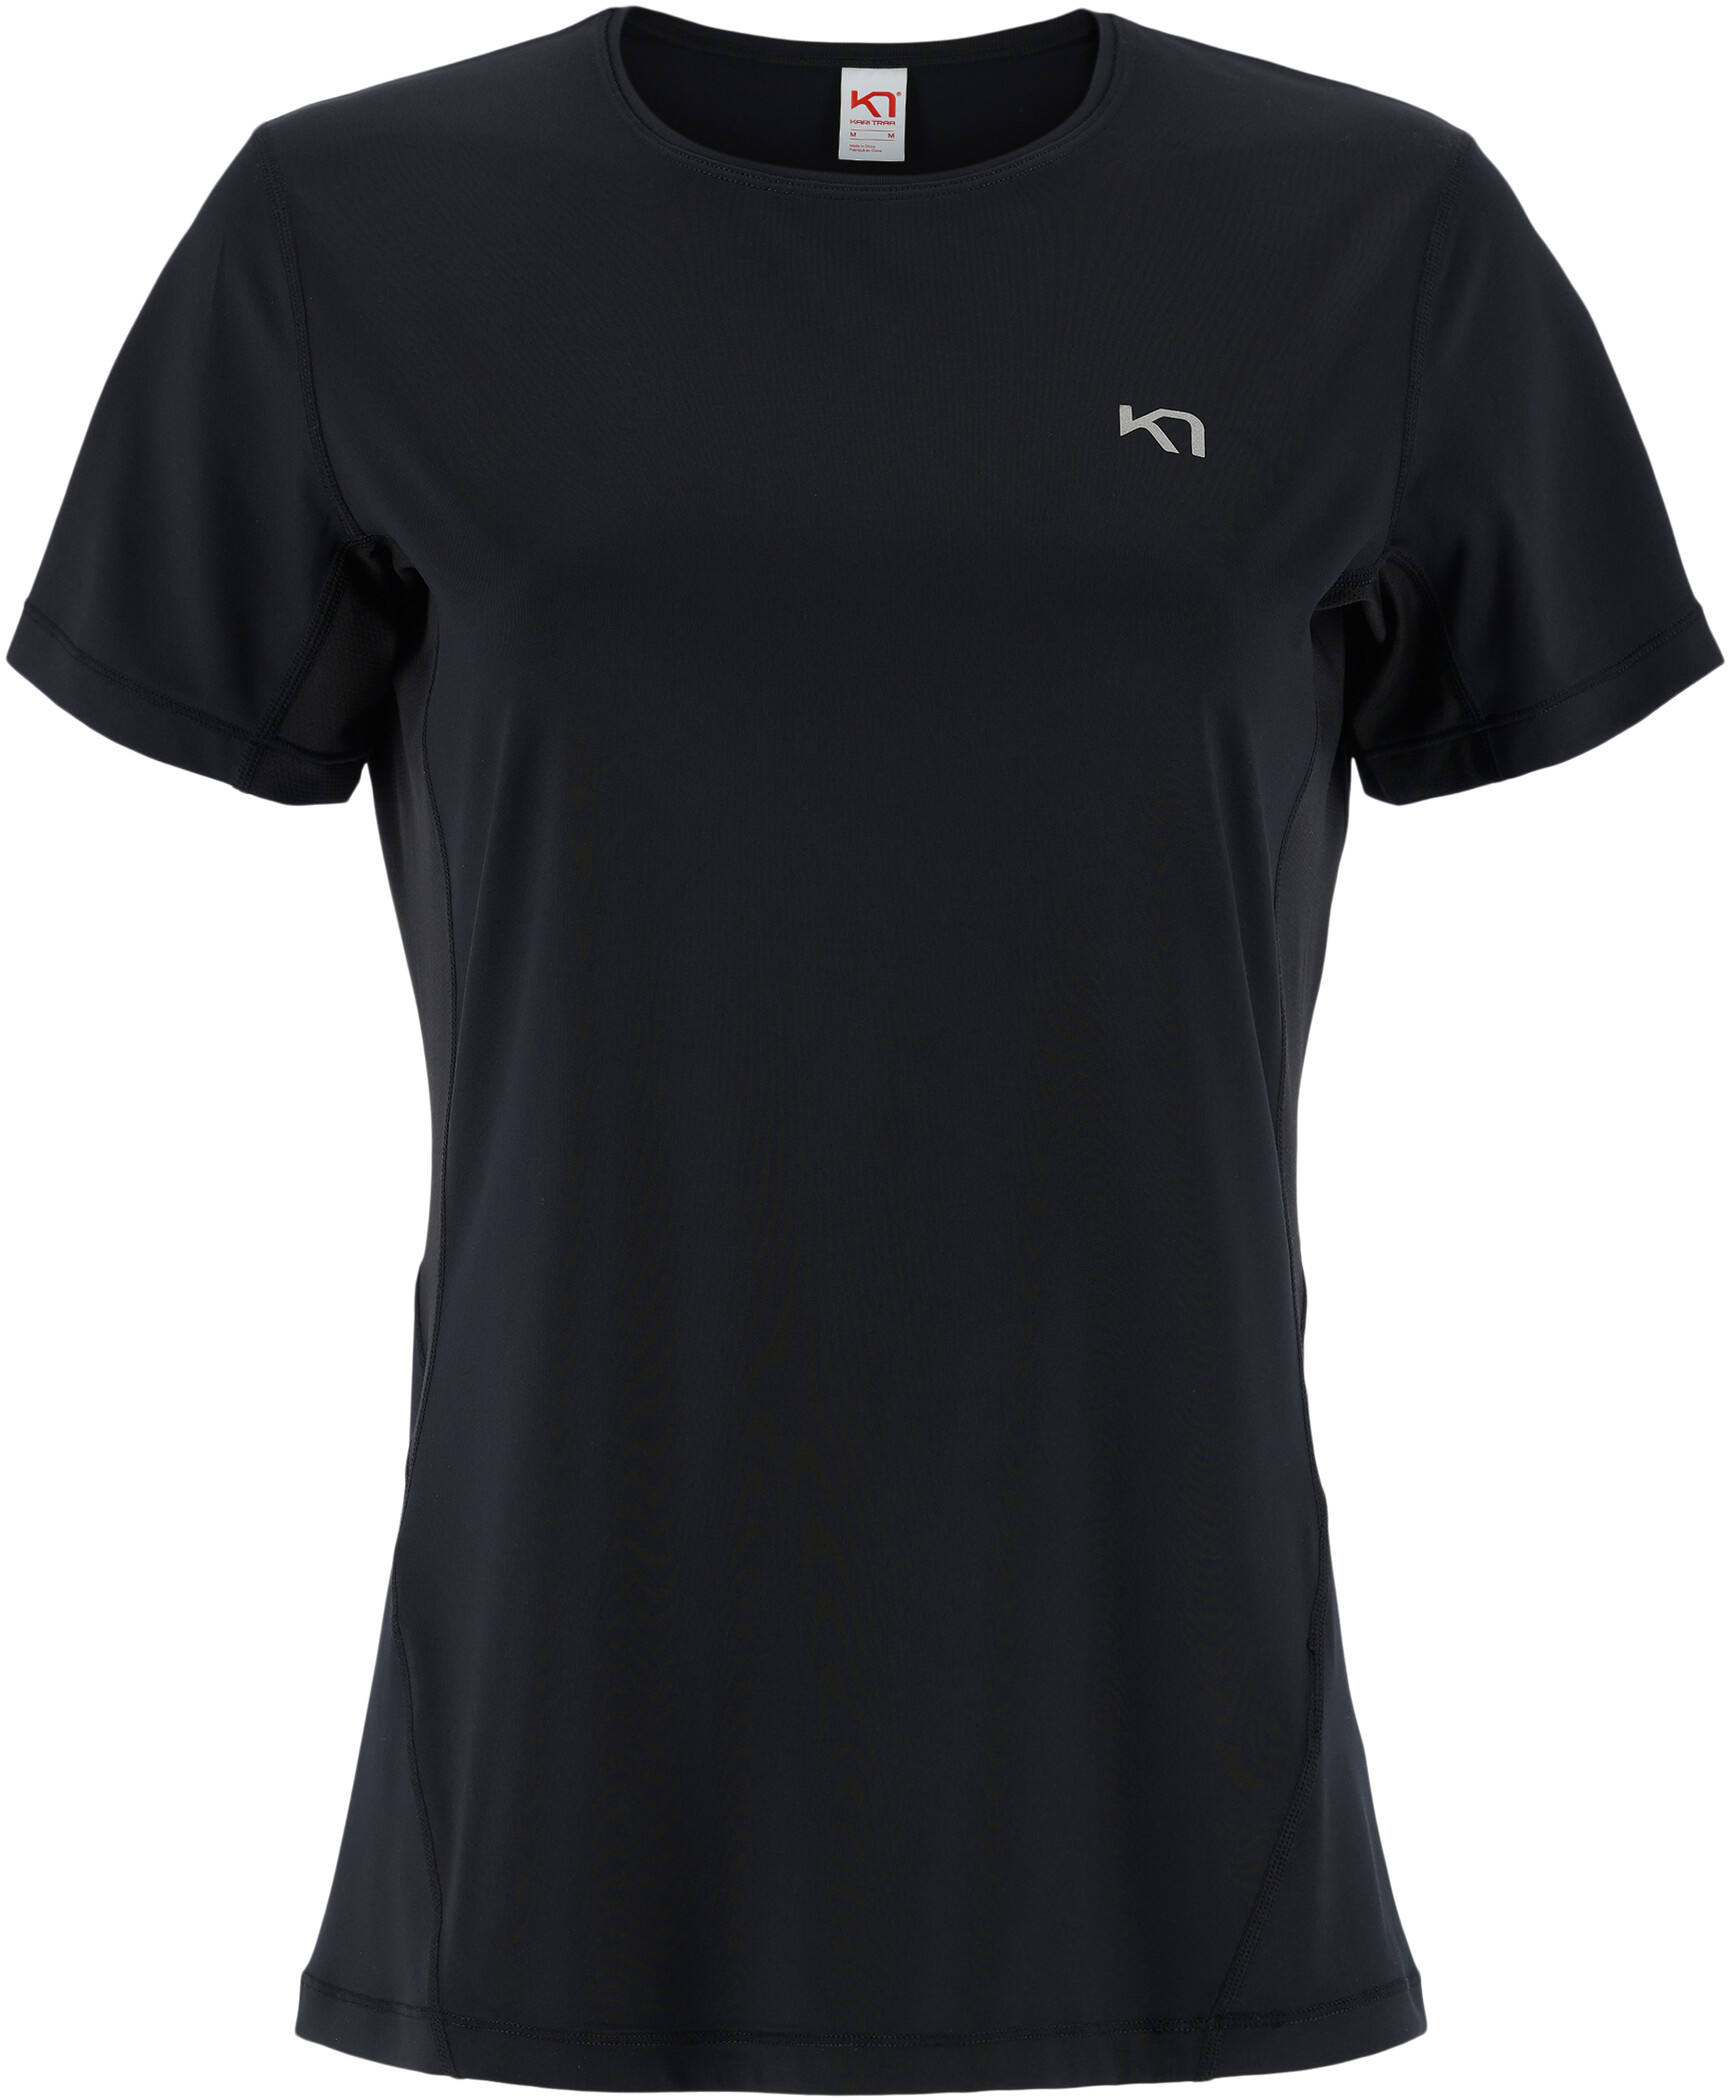 Kari Traa Nora 2.0 Kurzarm T-Shirt Damen schwarz